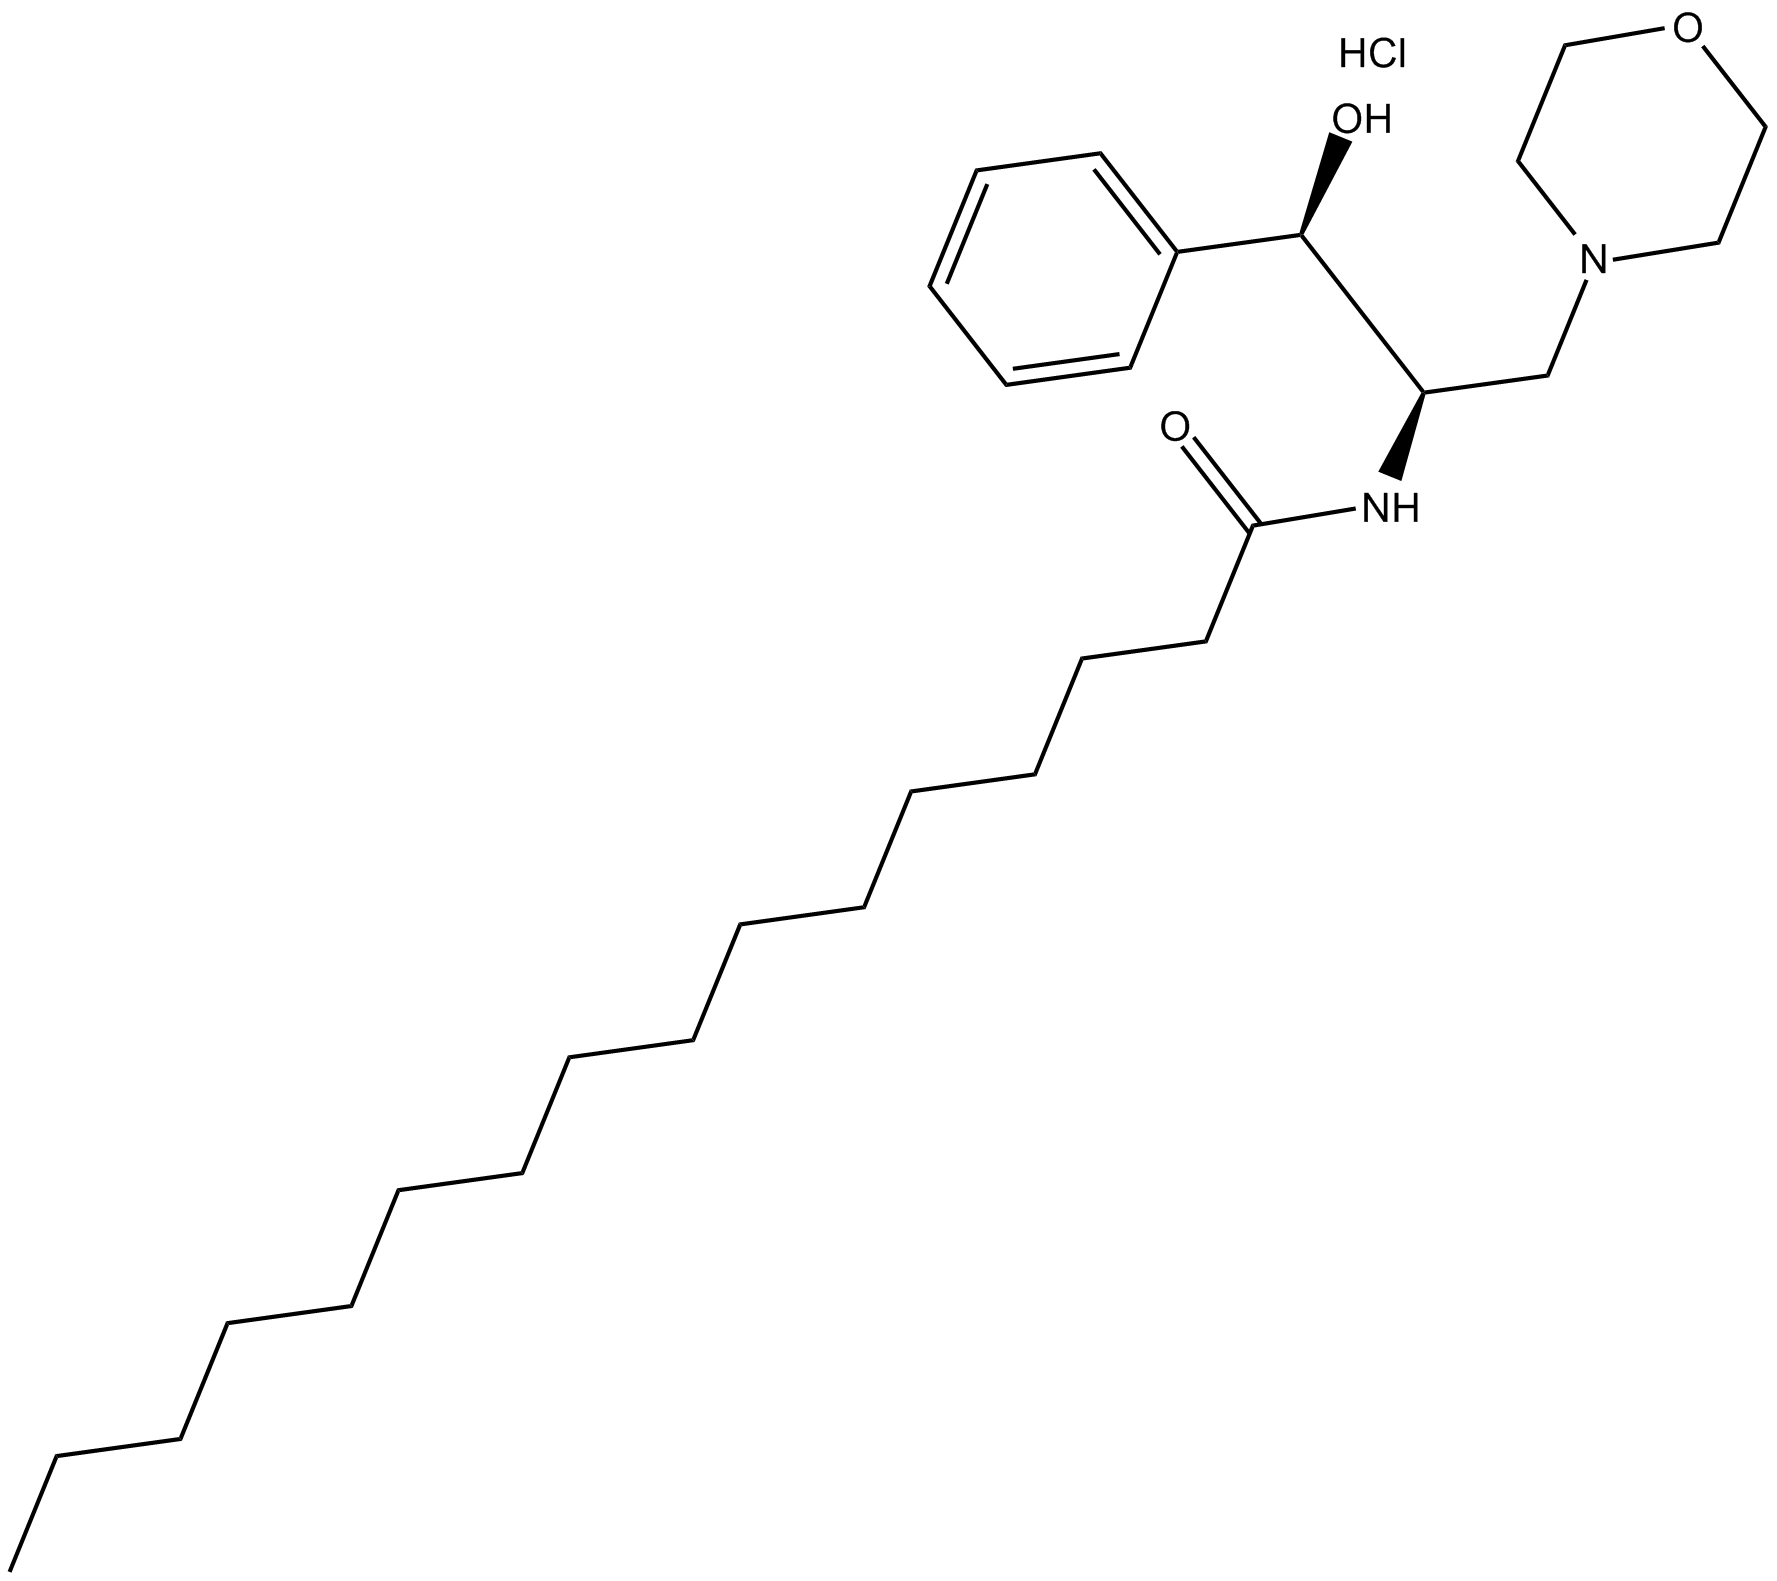 DL-threo-PPMP (hydrochloride)